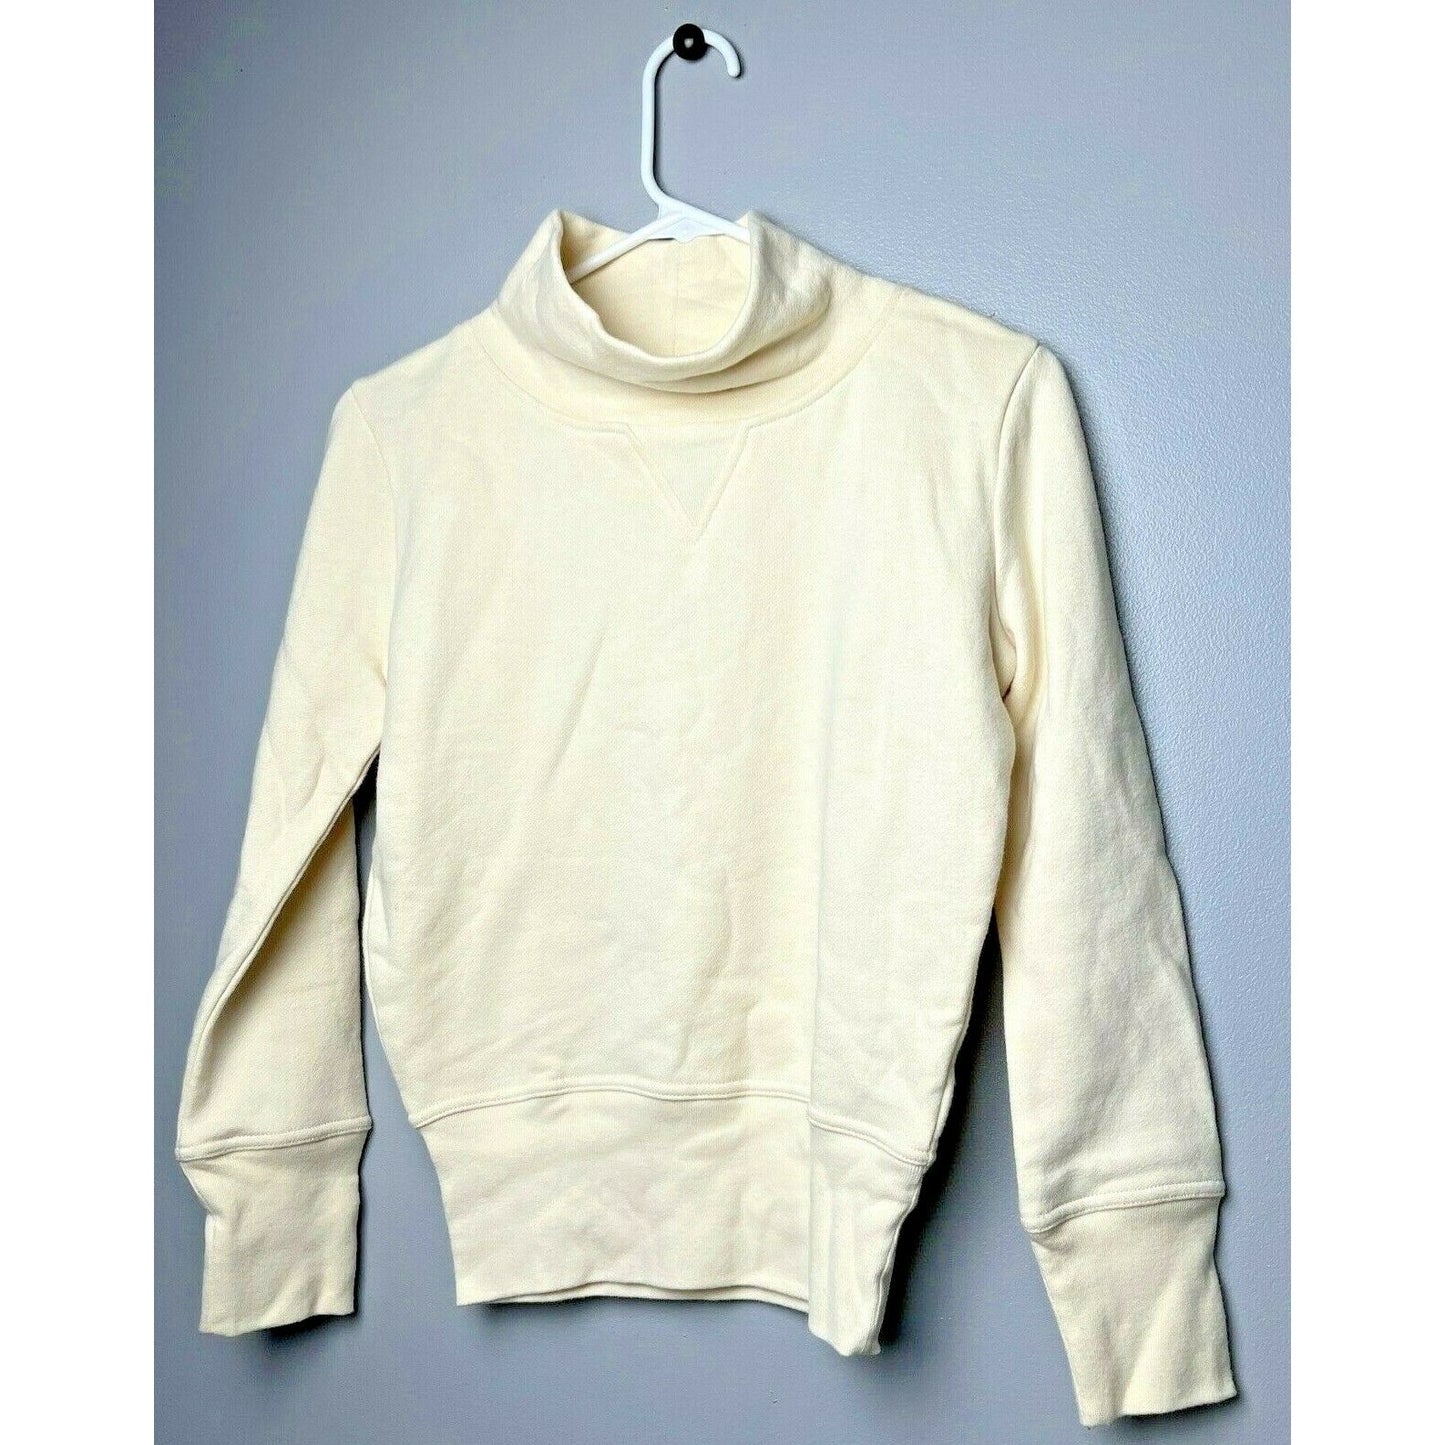 Women's Madewell Turtleneck Sweatshirt, Size XX-Small - Ivory